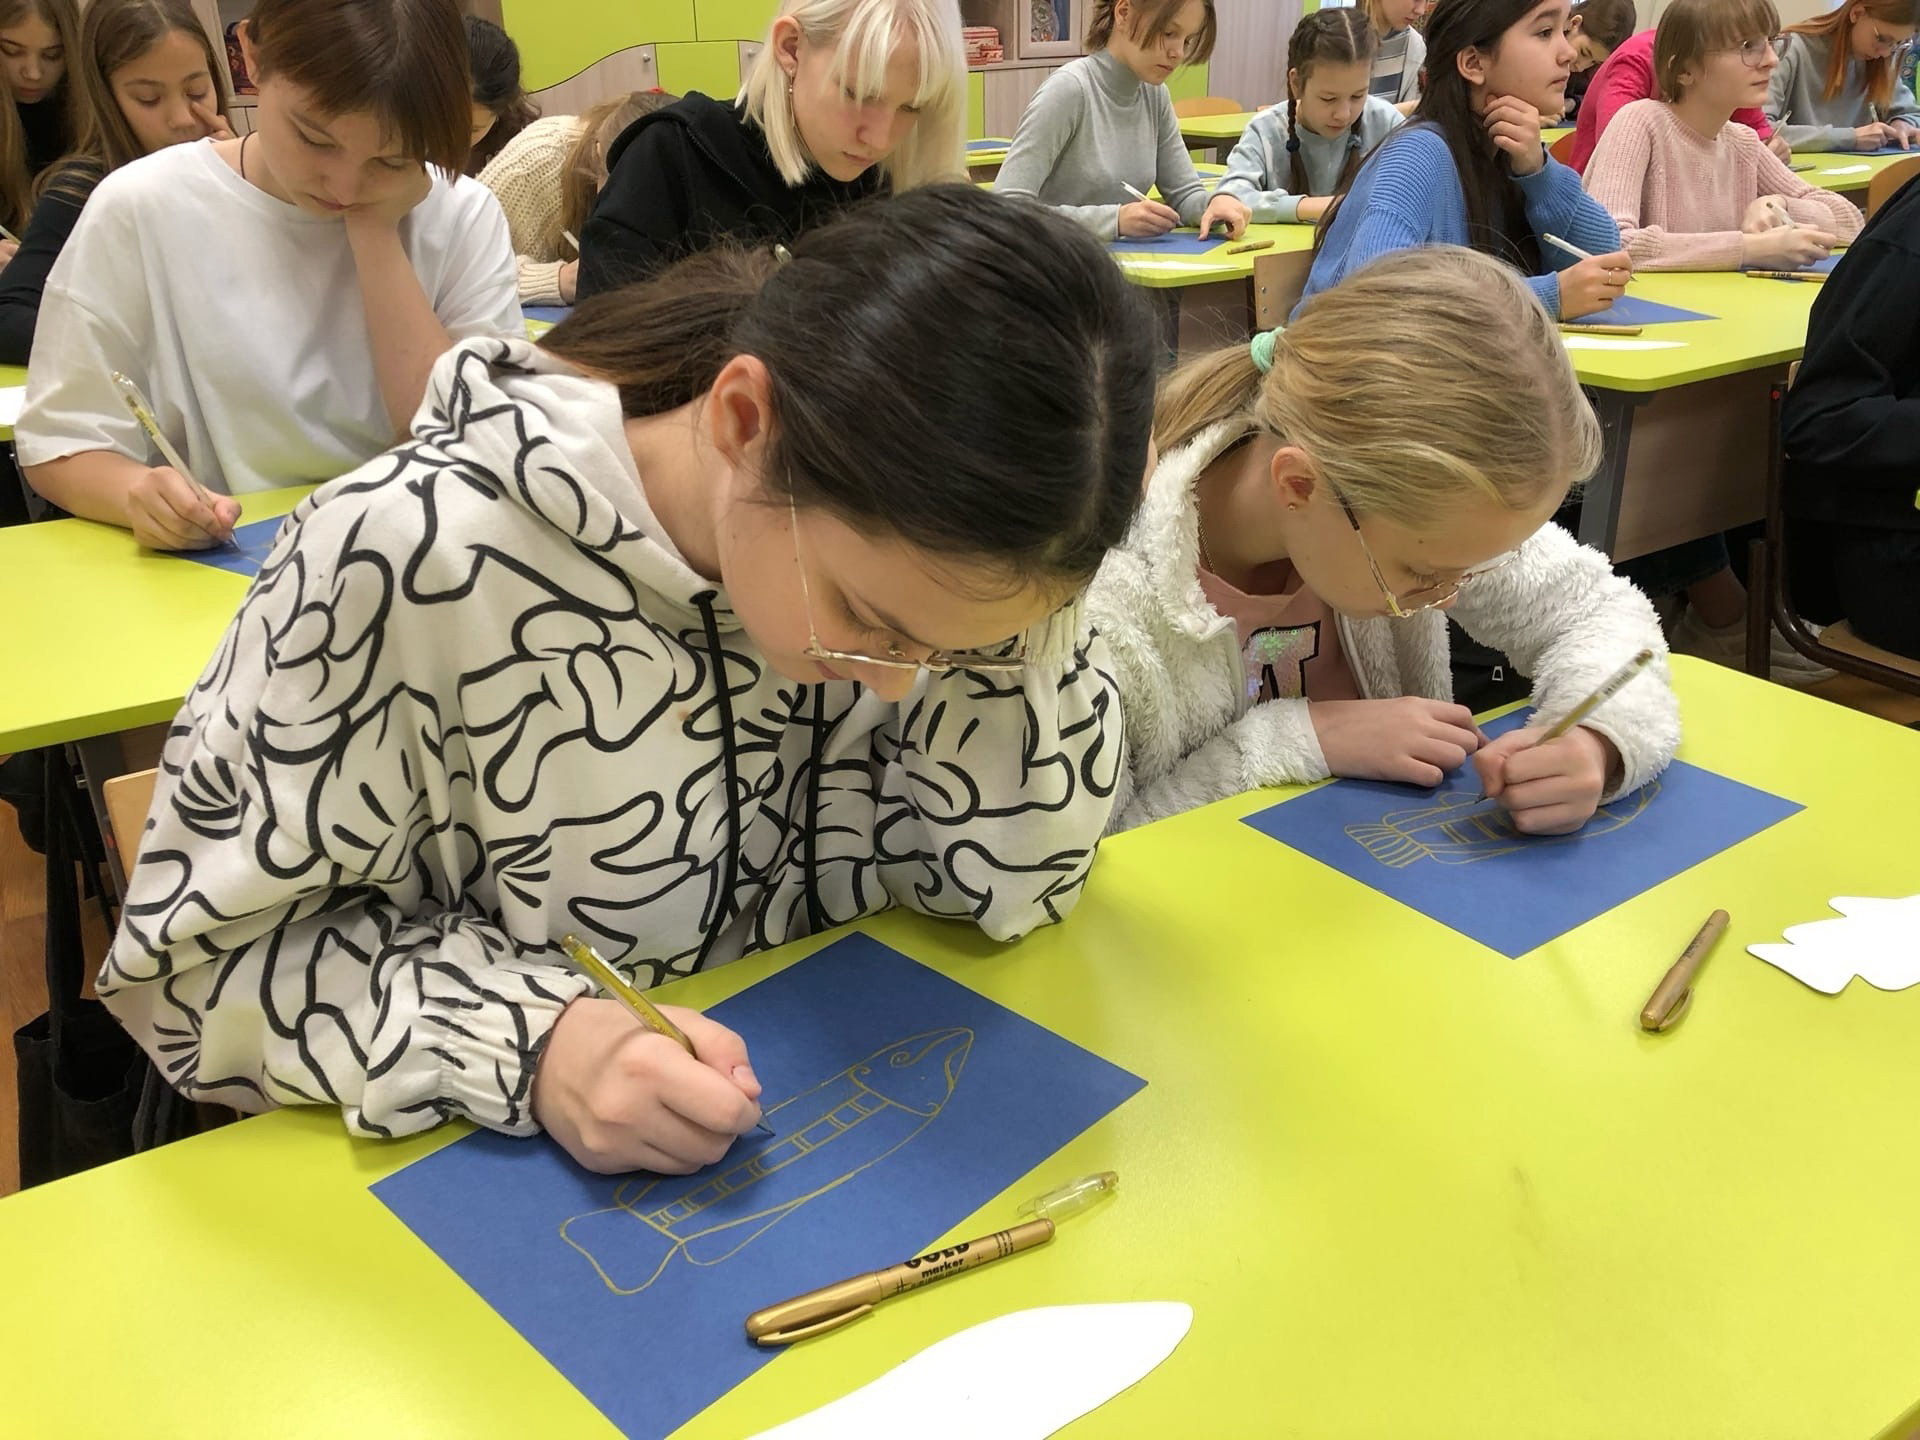 Novgorodilaiset koululaiset oppivat piirtämään karjalaista haukea kaupungin 3. kymnaasin Visit-keskuksessa Karjalasta saapuneiden v ieraiden opastuksella.